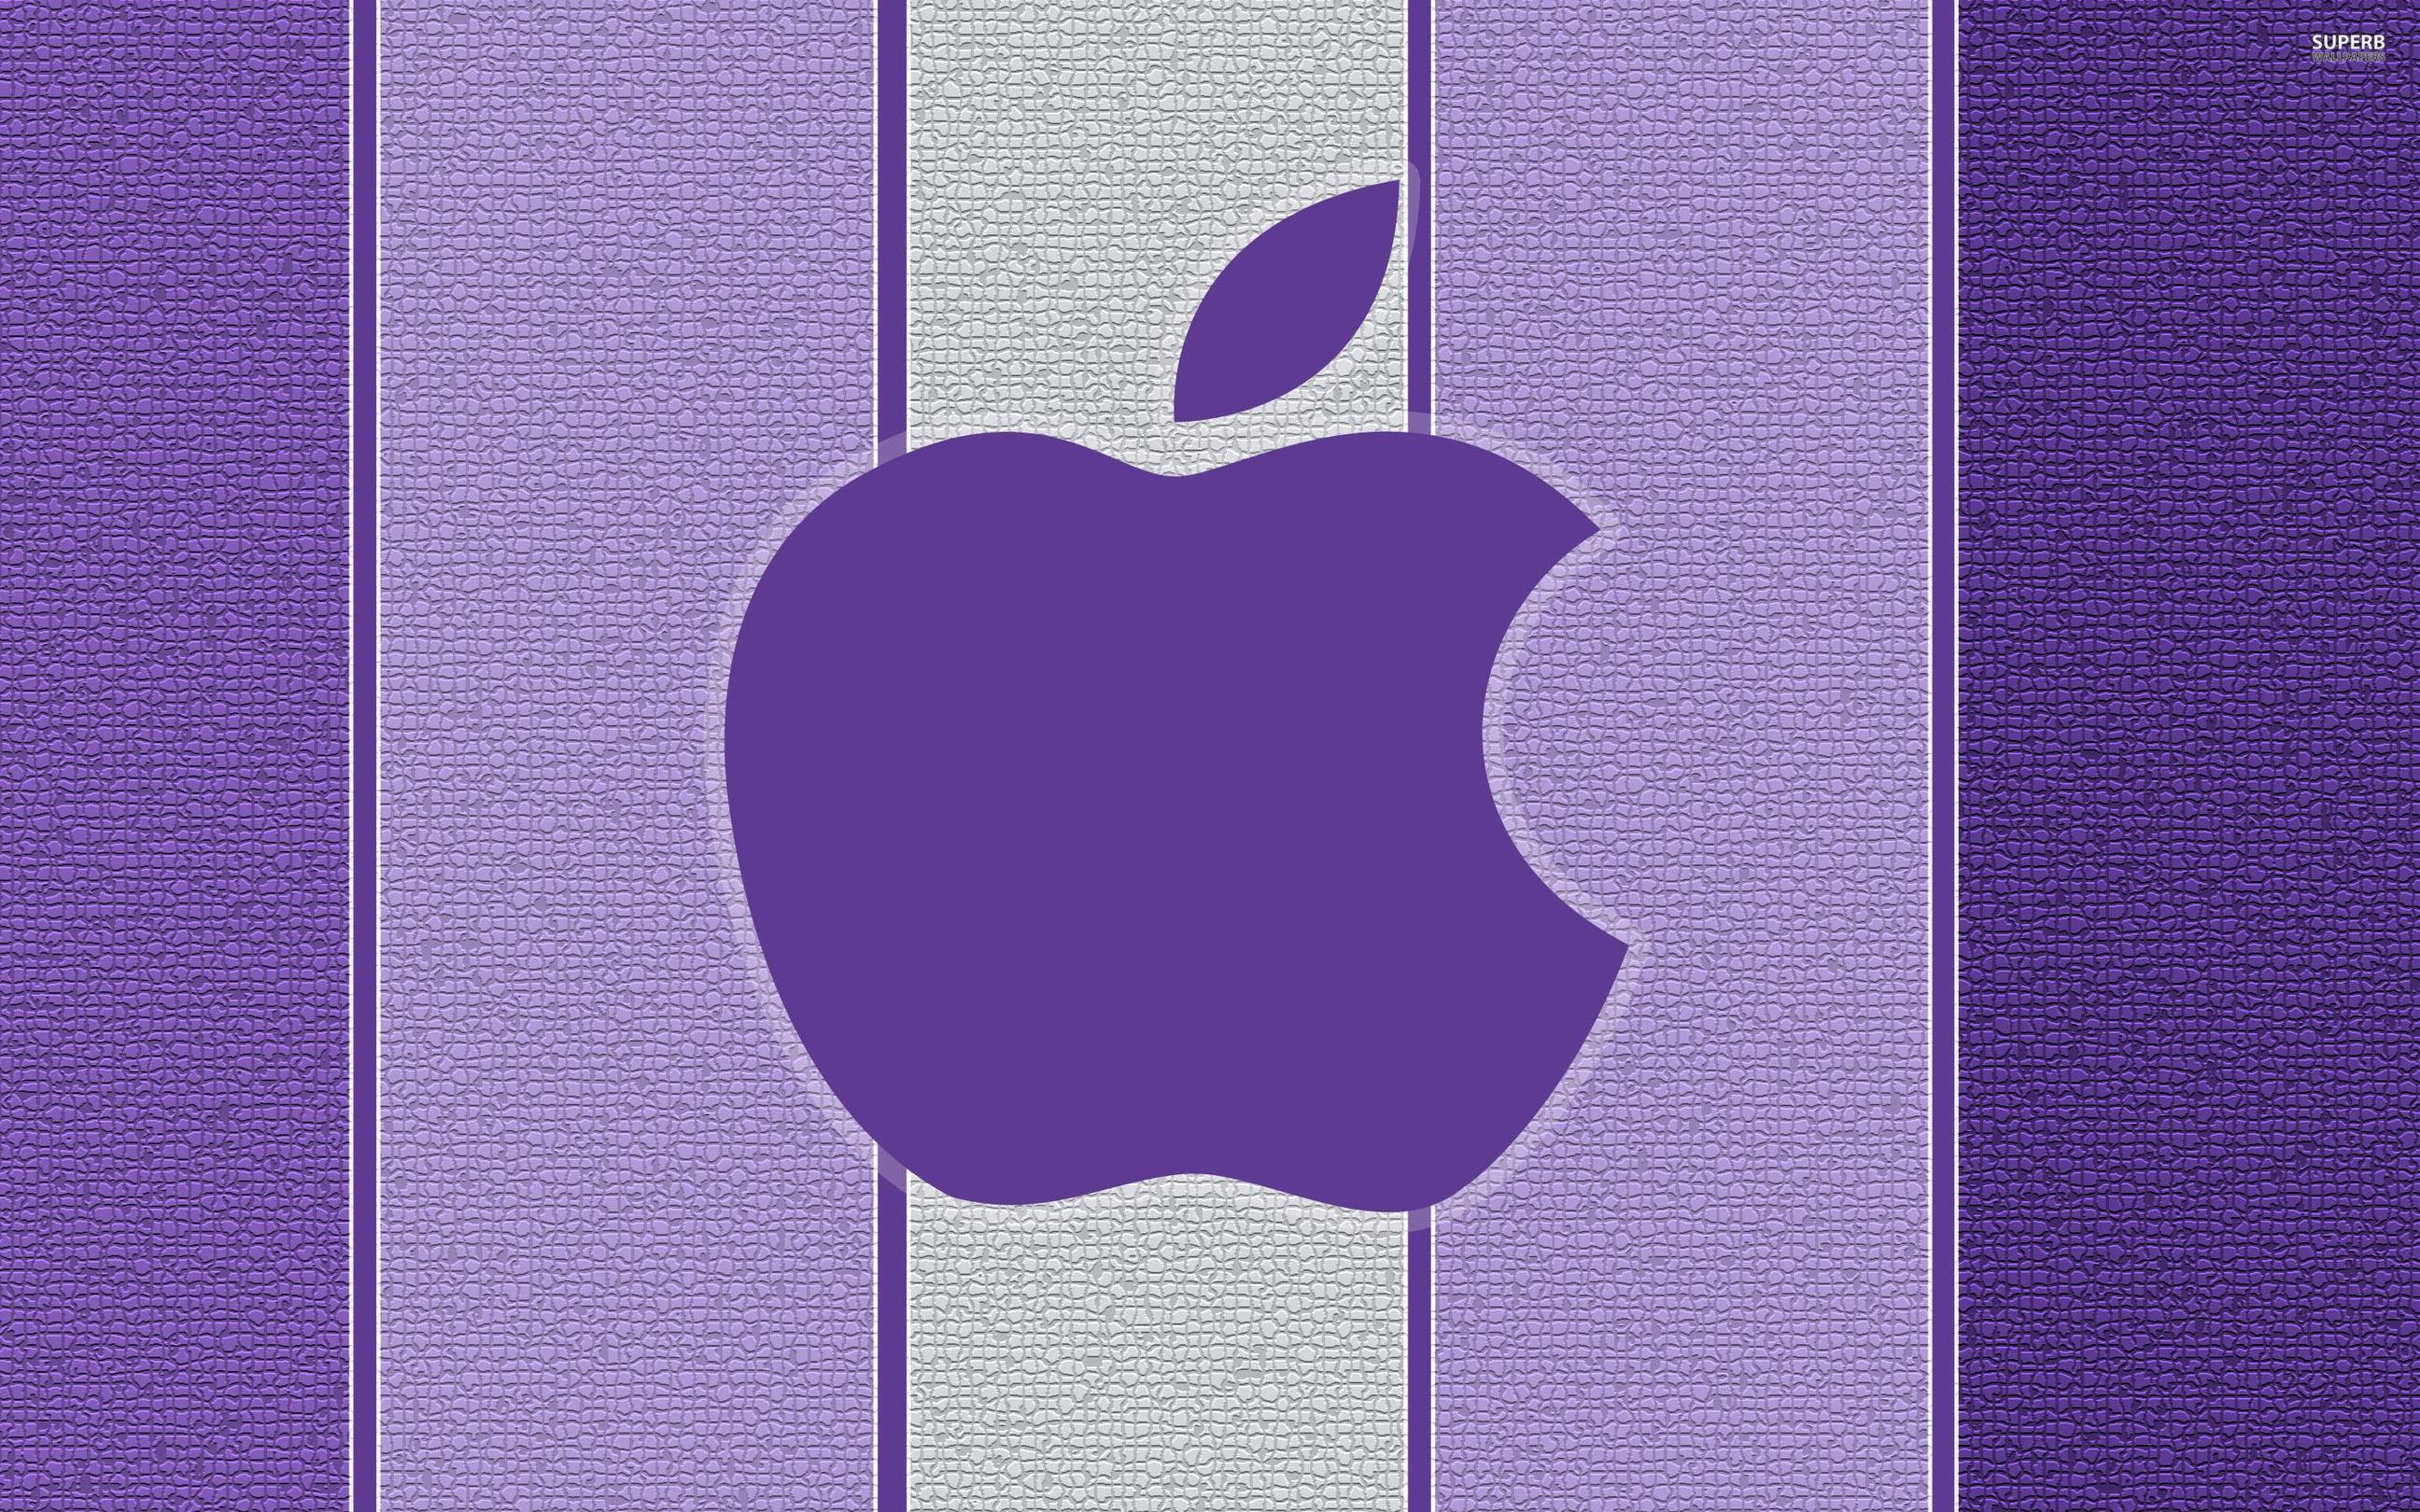 Purple Apple logo wallpaper wallpaper - #